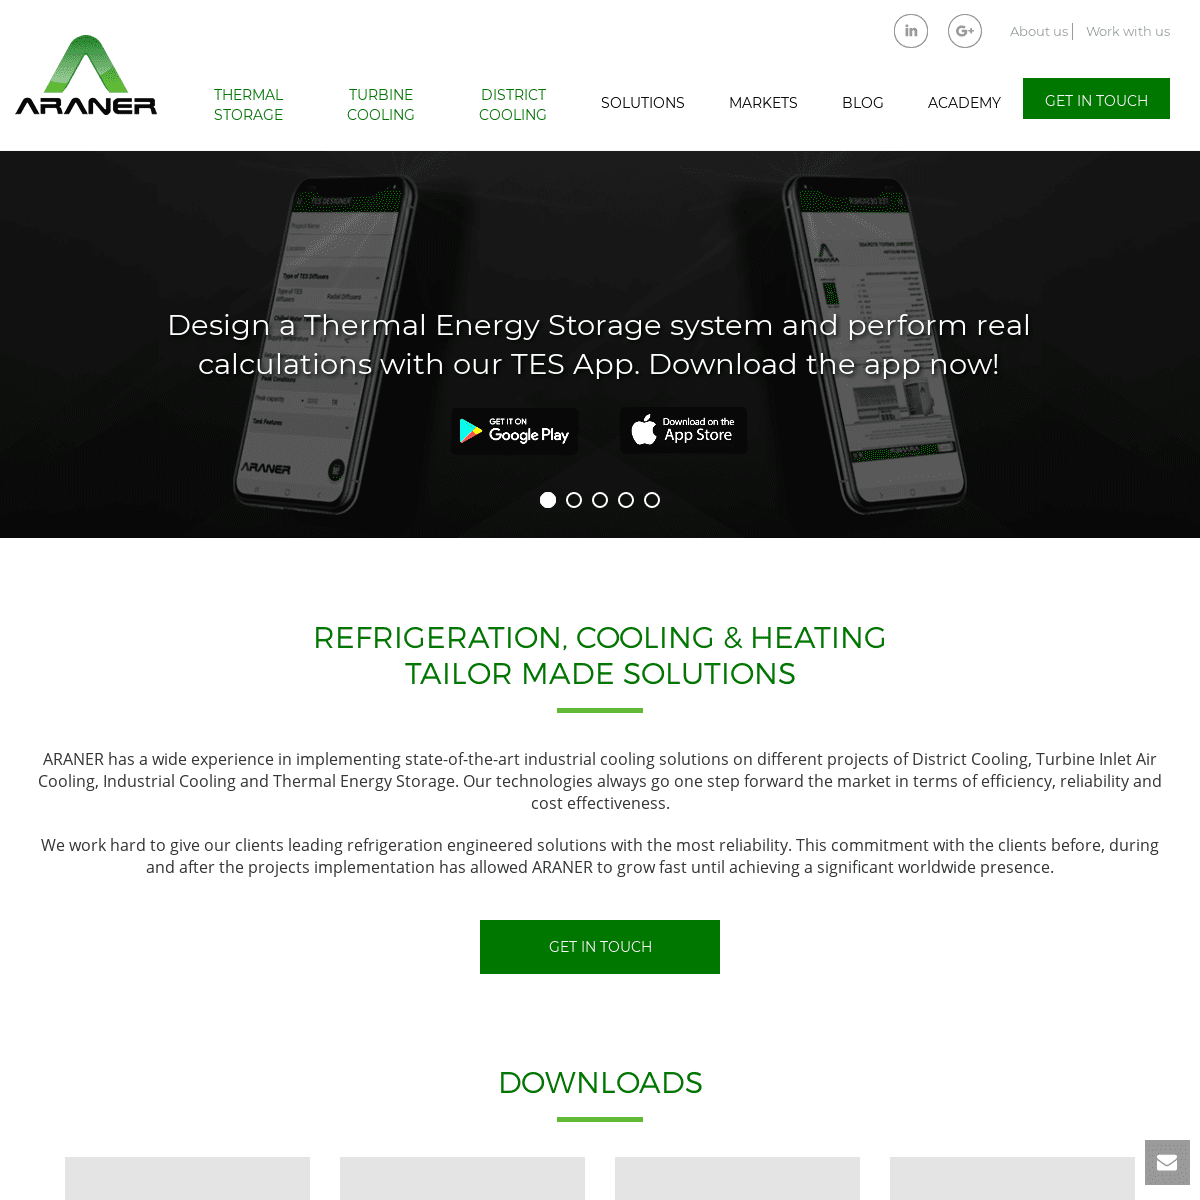 A complete backup of araner.com